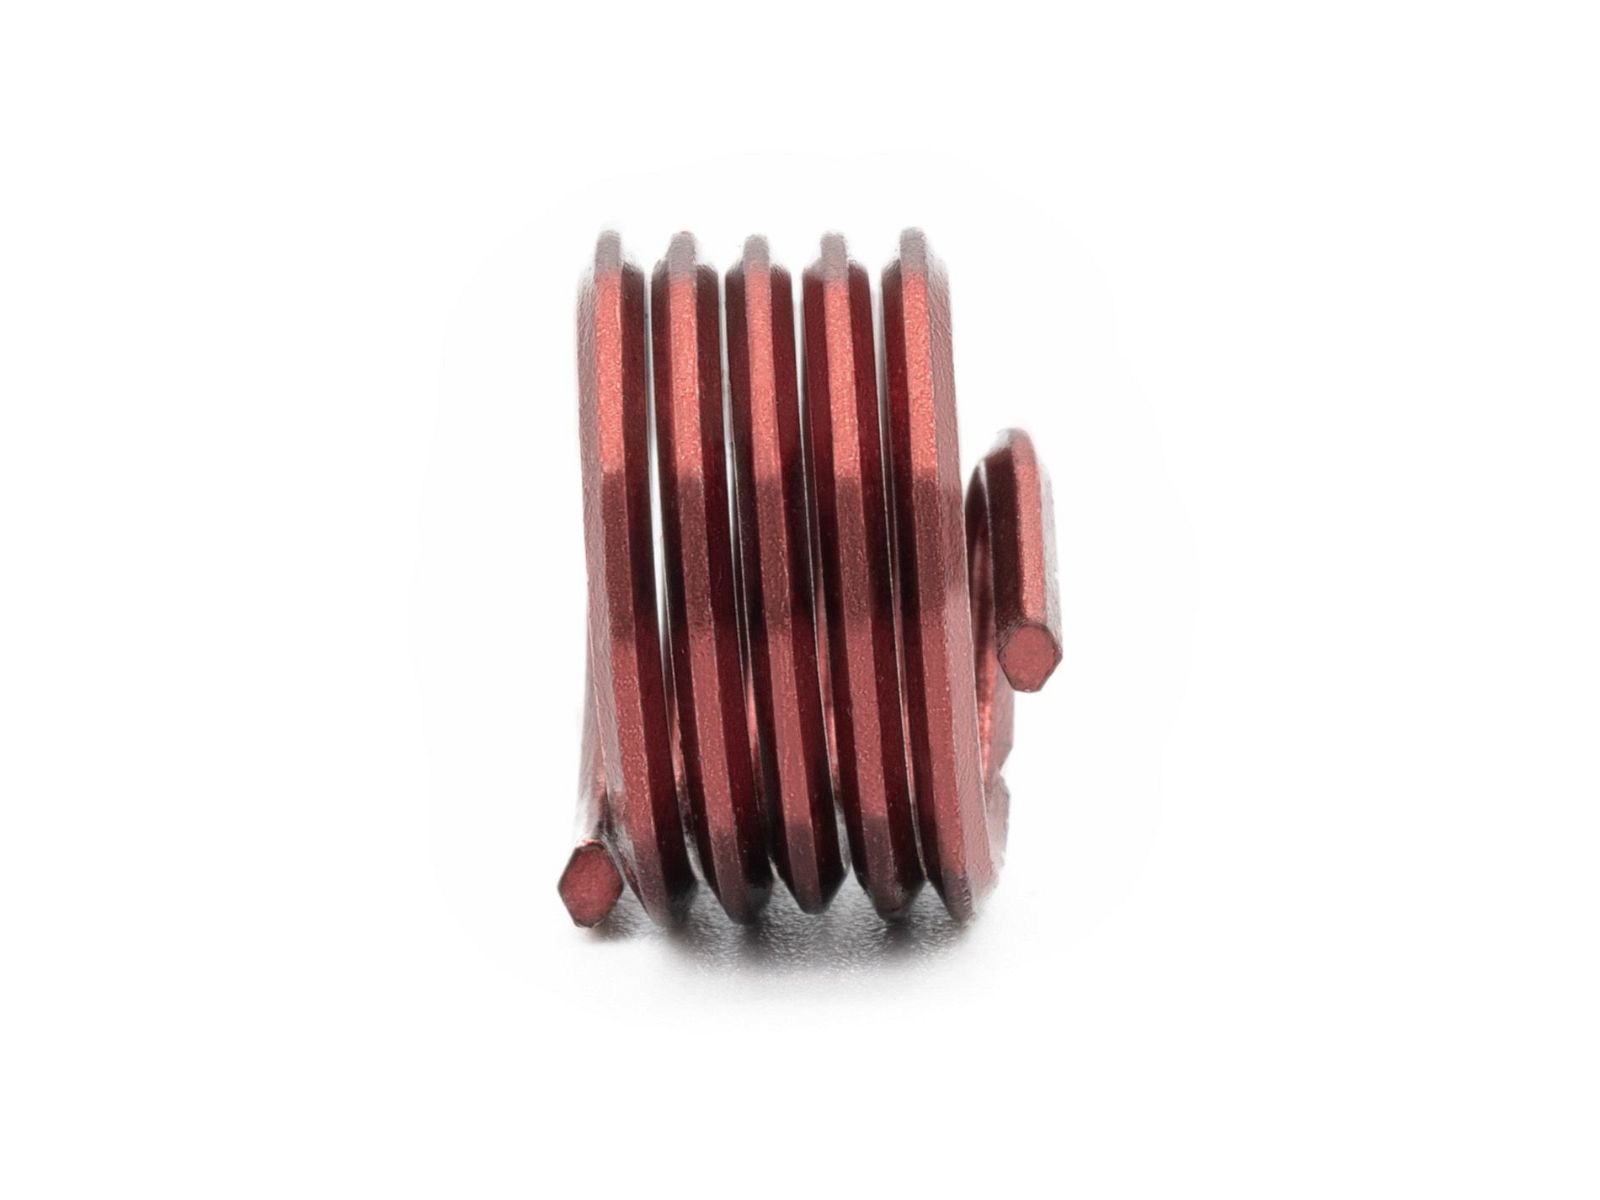 BaerCoil Wire Thread Inserts BSF 9/16 x 16 1.0 D (14.29 mm) - screw grip (screw locking) - 50 pcs.